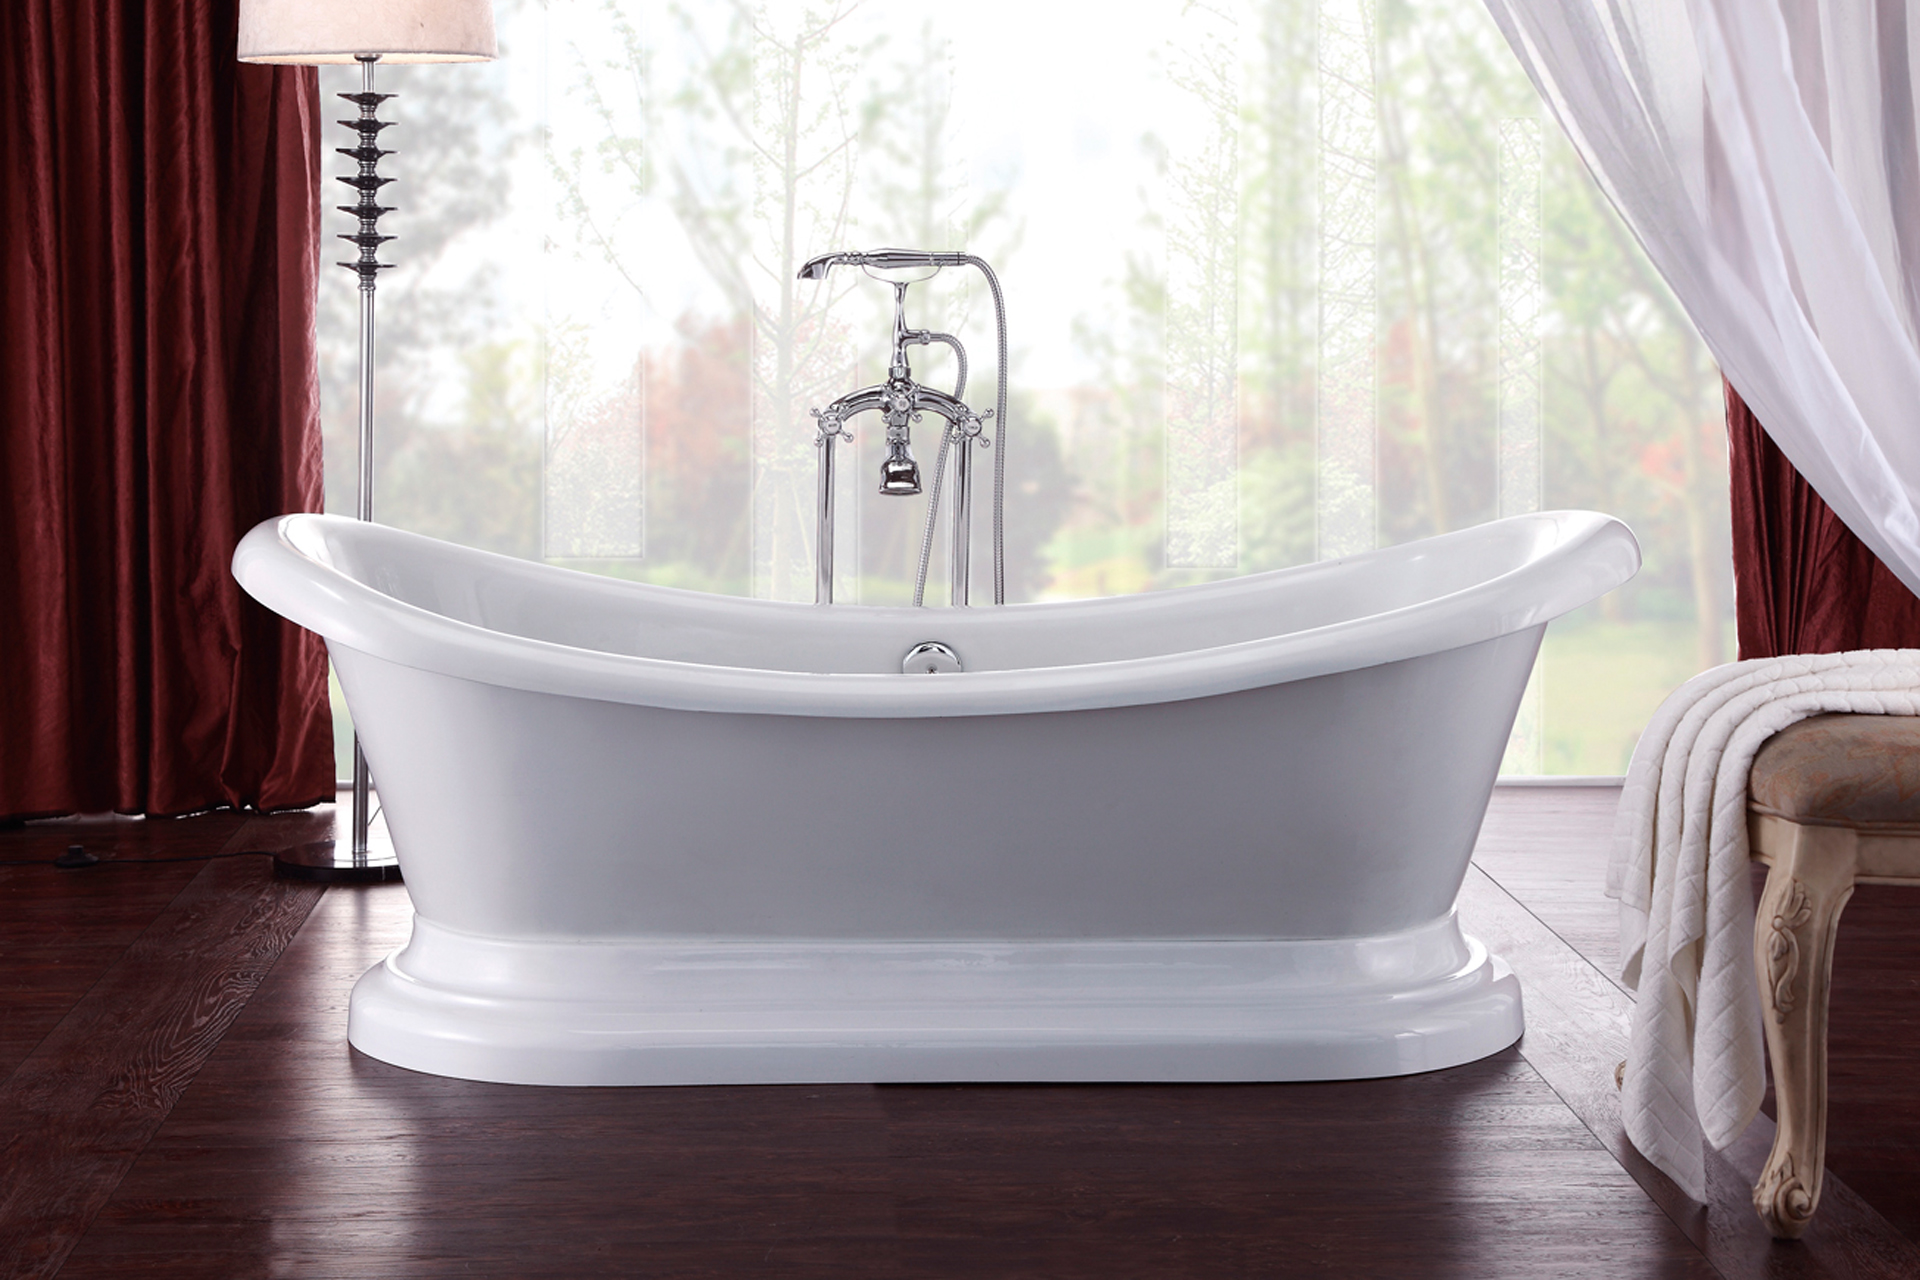 Kaal dutje optie klassiek bad met sokkel - ruime keuze antieke baden bij bubbles & co.